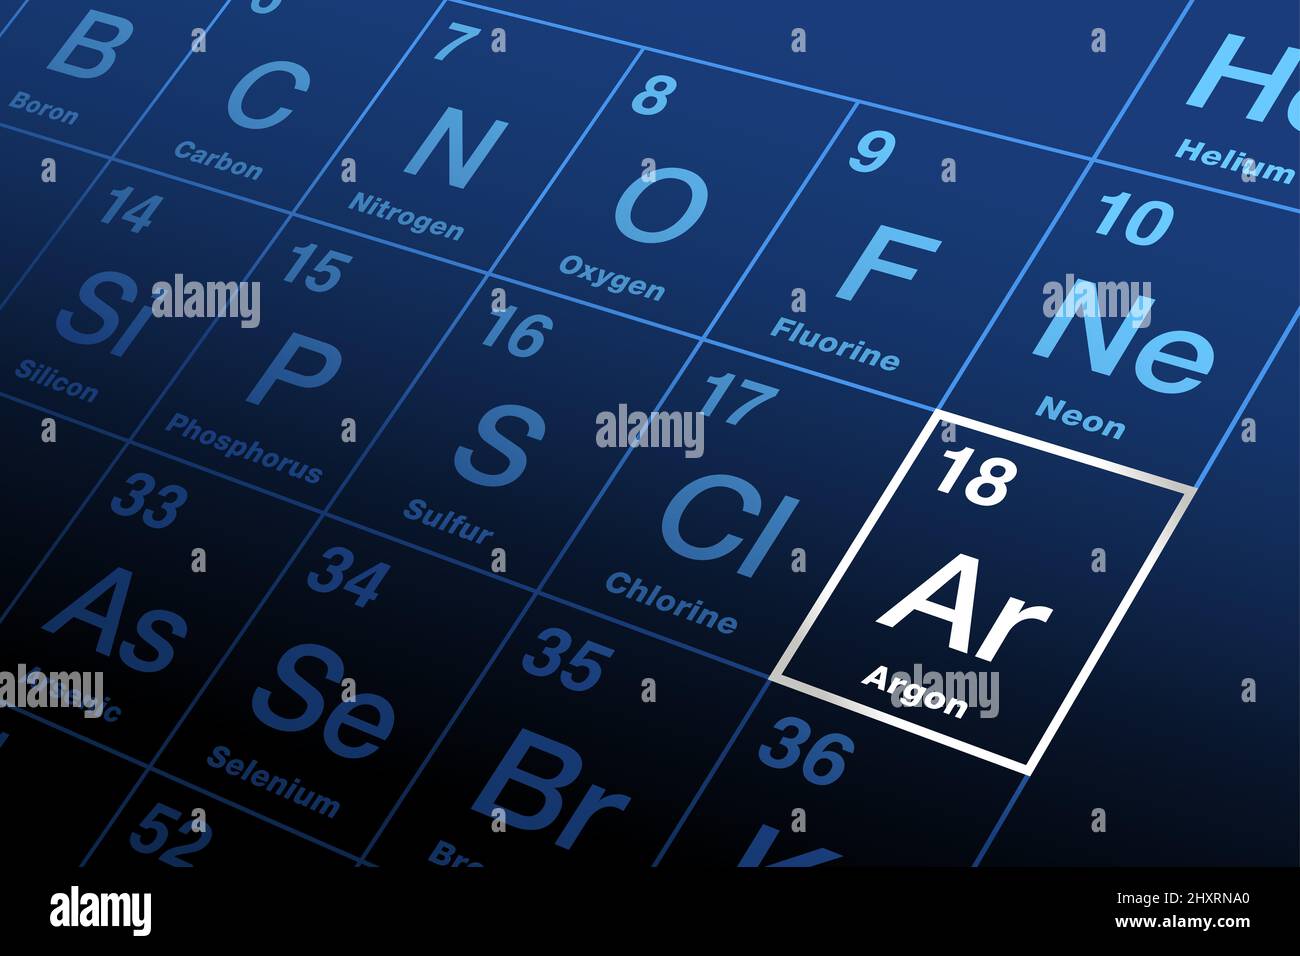 Argon sur la table périodique des éléments. Gaz noble, avec le symbole AR et le numéro atomique 18. Banque D'Images